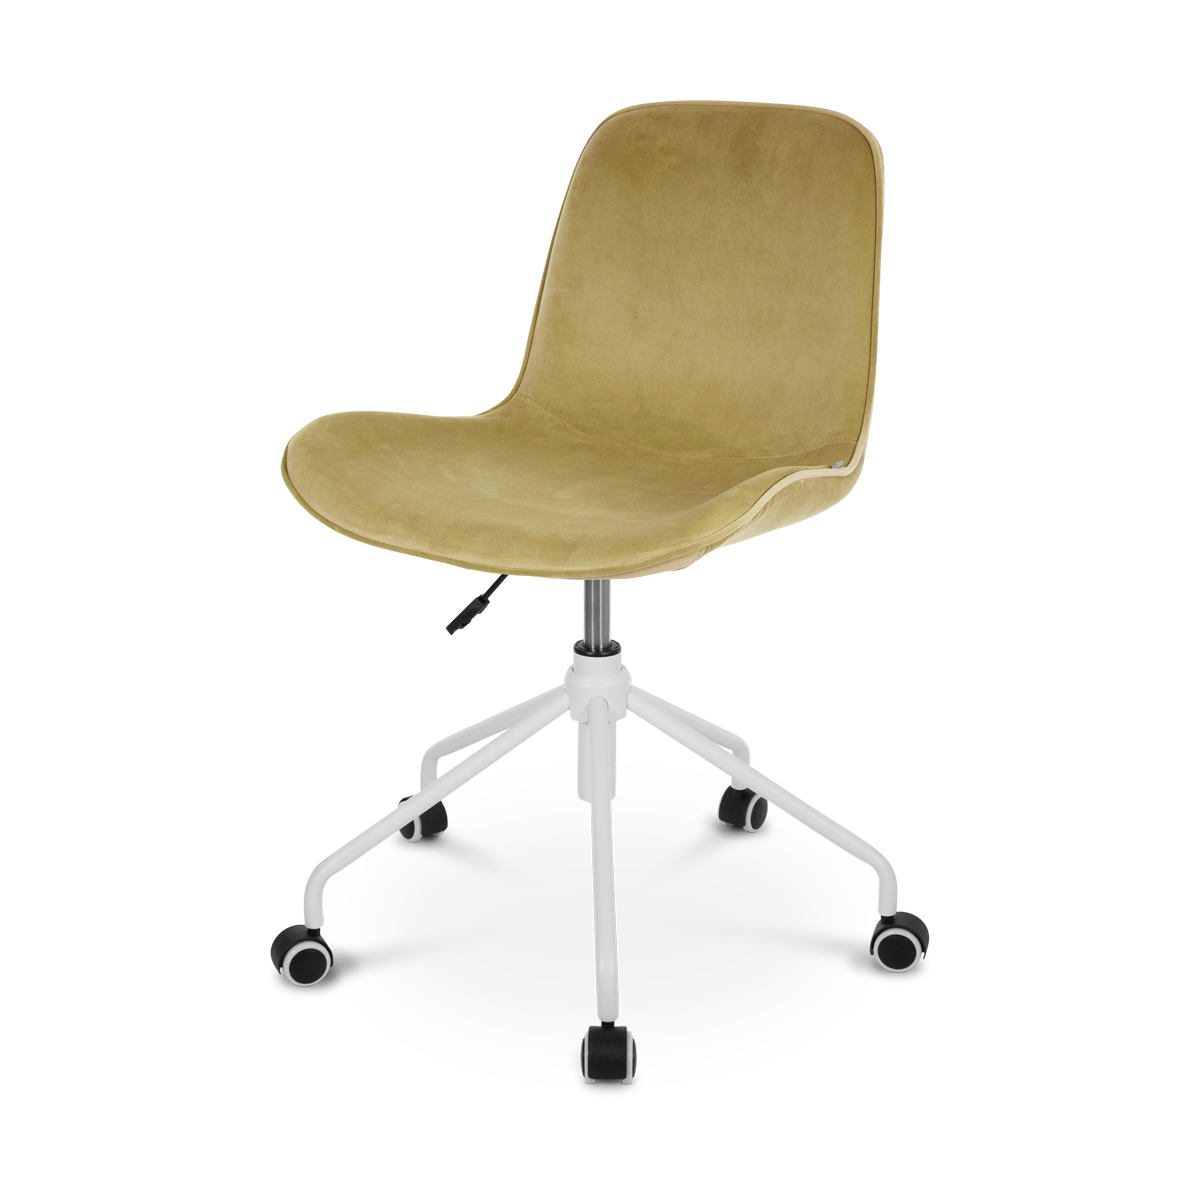 Nout-Fé bureaustoel velvet olijf groen - wit onderstel